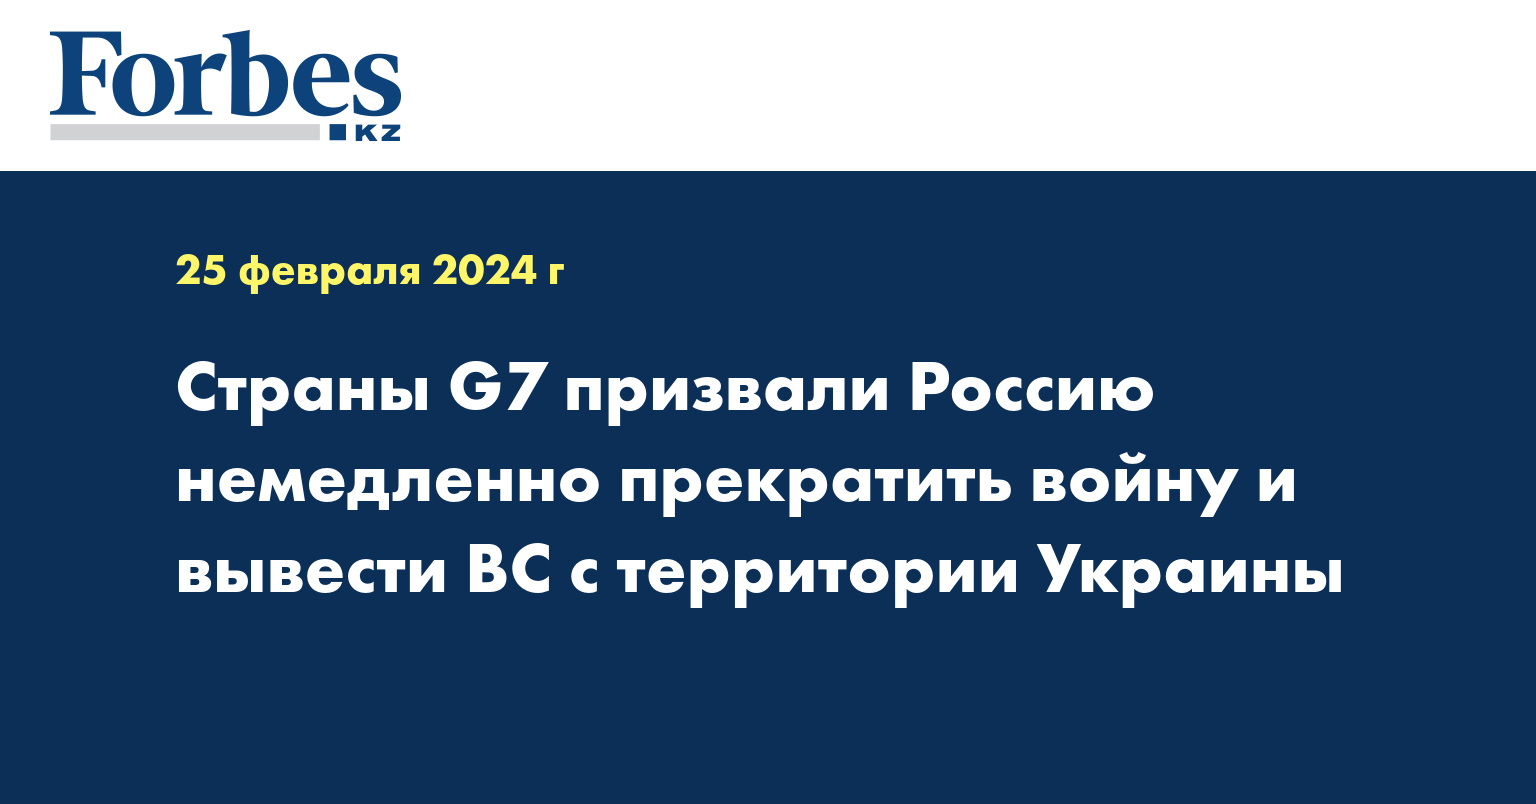 Страны G7 призвали Россию немедленно прекратить войну и вывести ВС с территории Украины